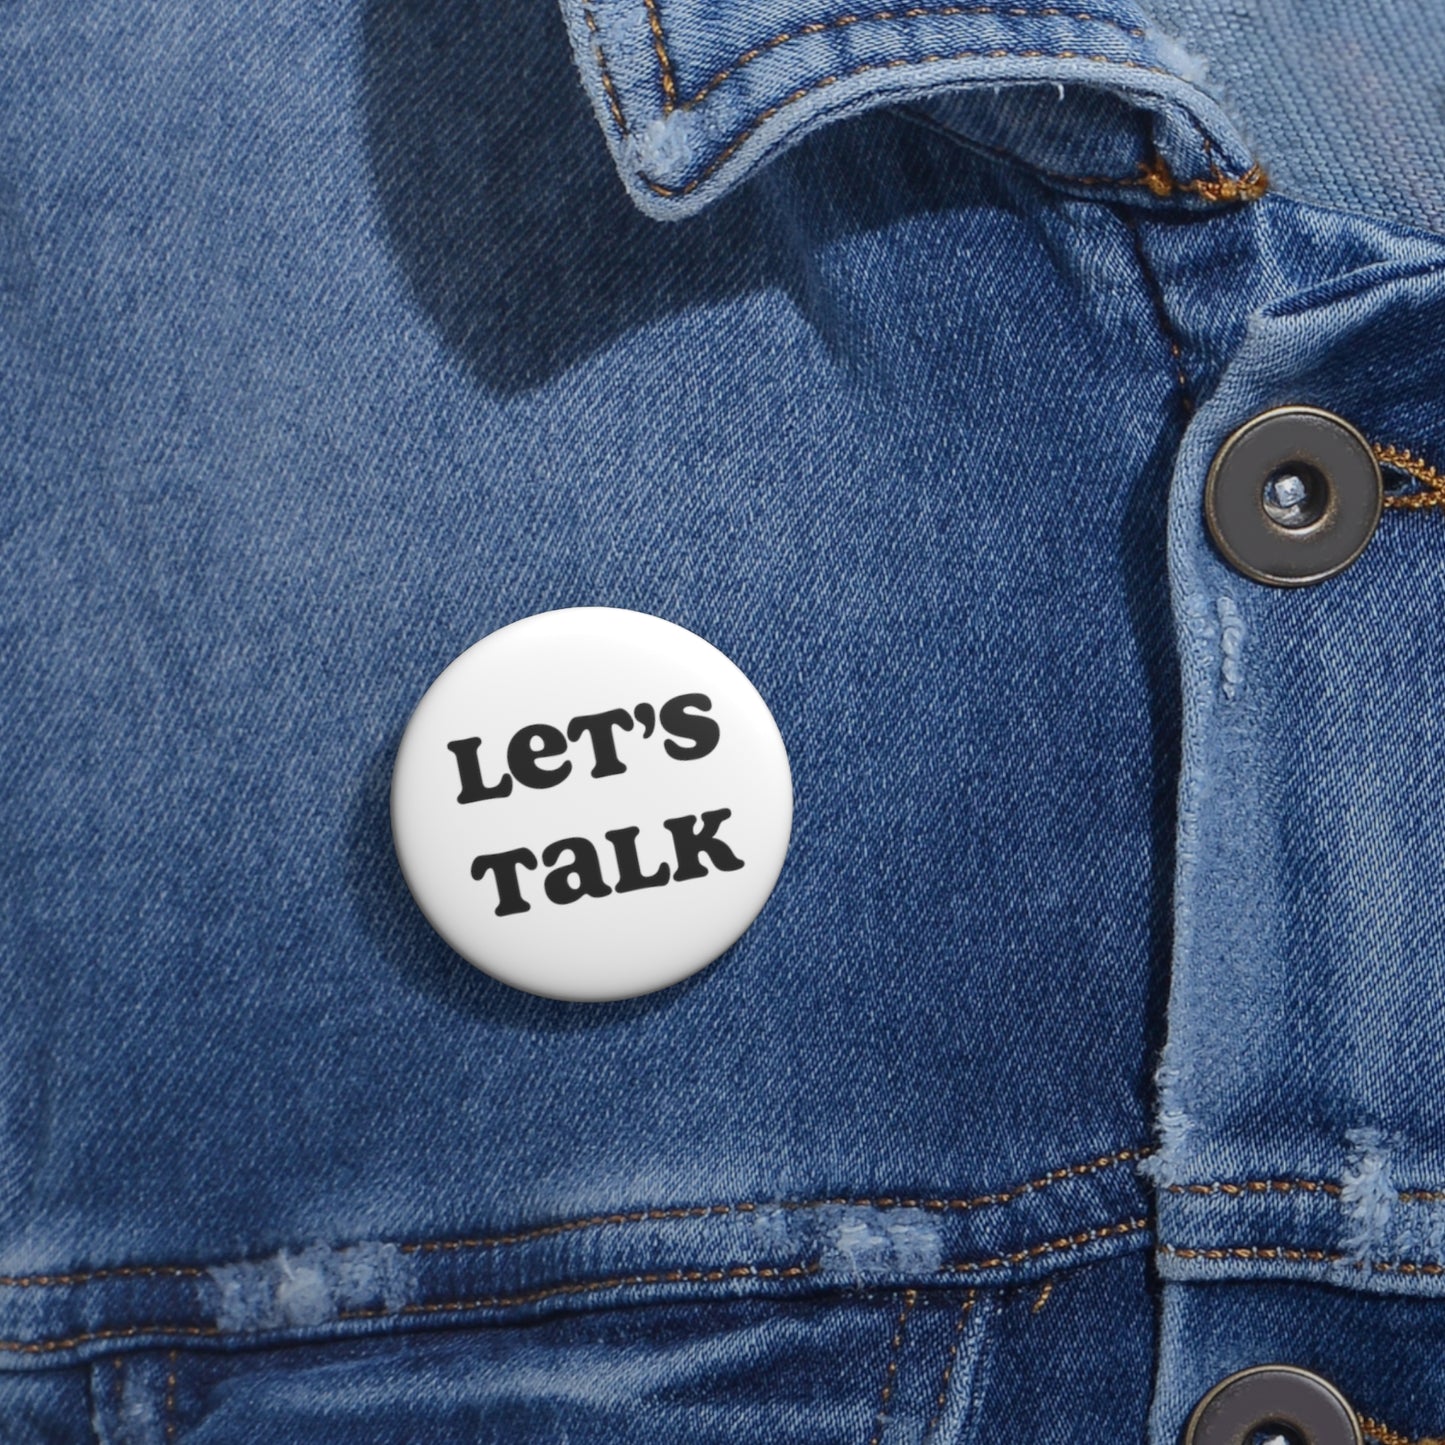 "Let's Talk" | Pin